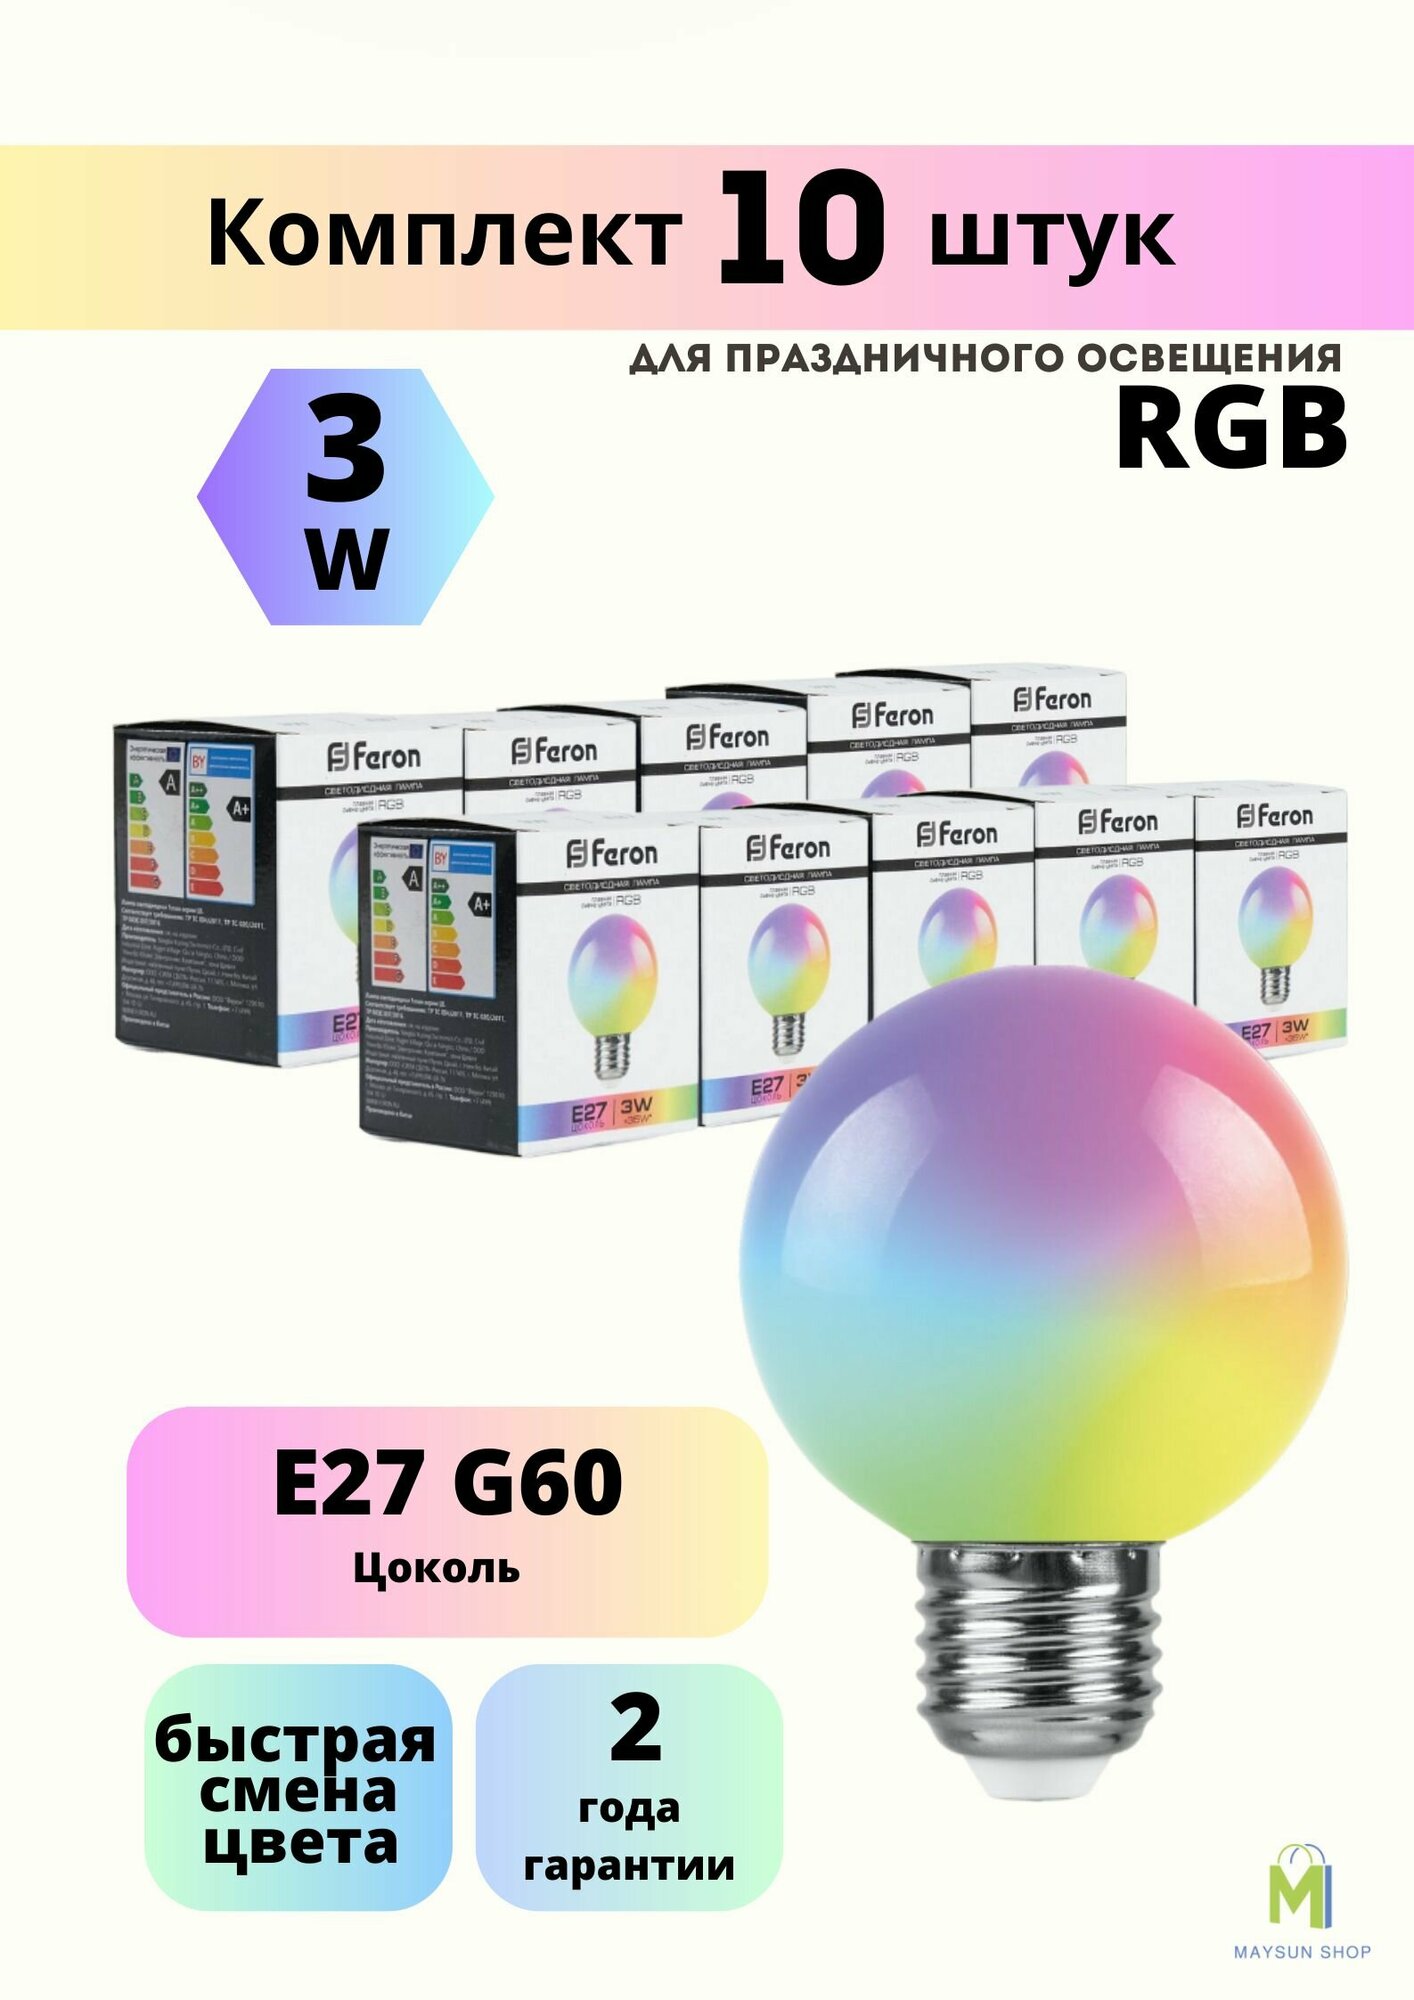 Набор светодиодных ламп для белт-лайт Feron LB-371 Шар матовый E27 3W RGB быстрая смена цвета 10 шт.